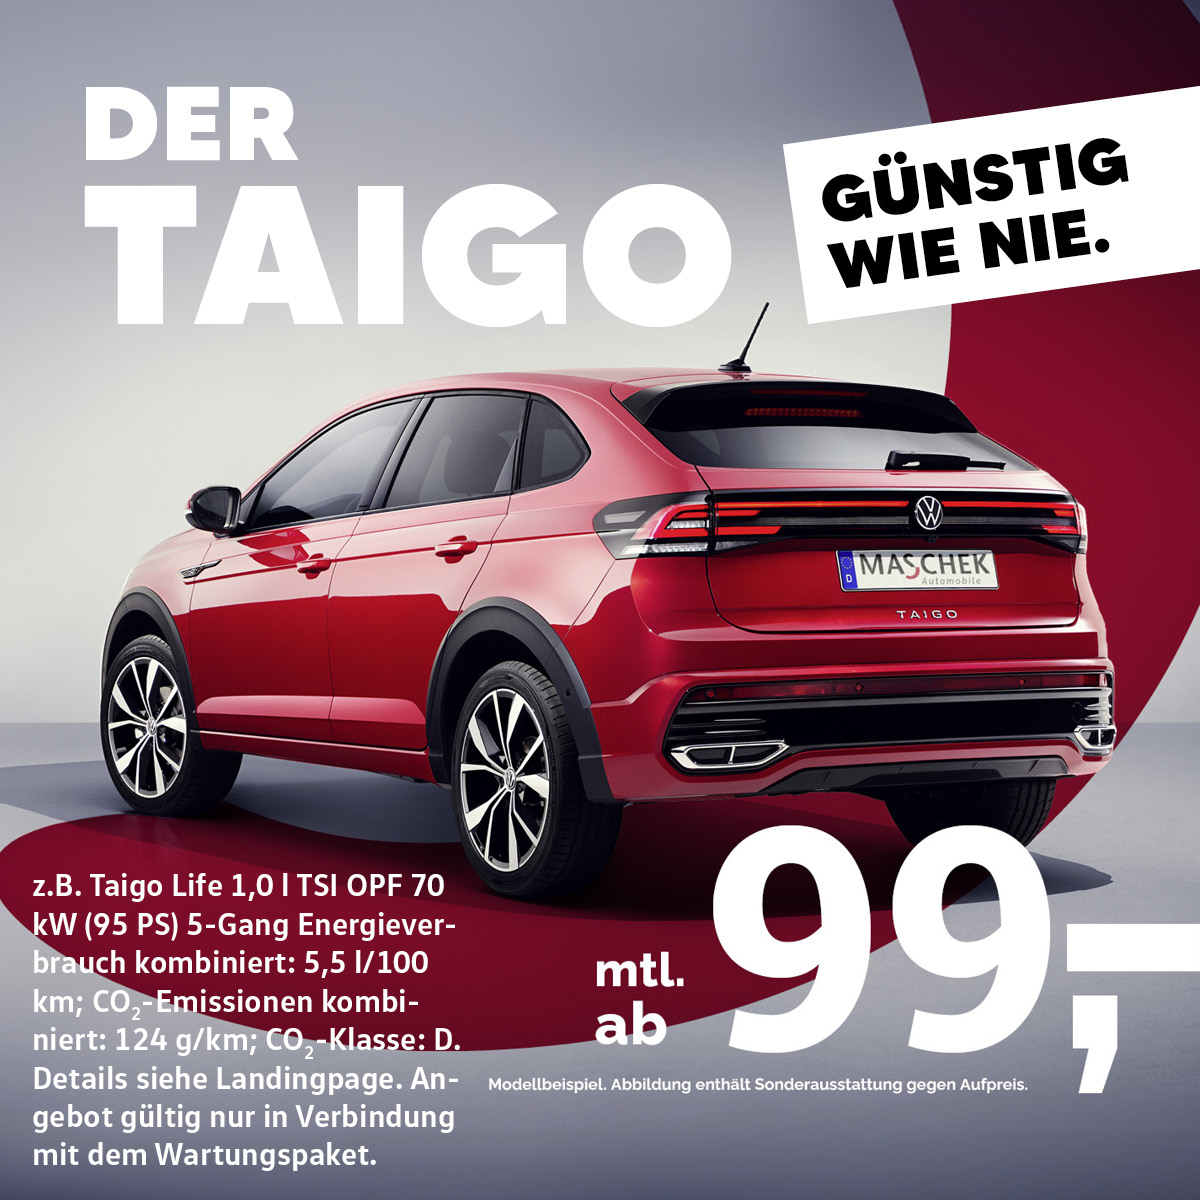 Jetzt den VW Taigo im attraktiven Privatleasing sichern! Schon ab 99 € mtl. leasen.